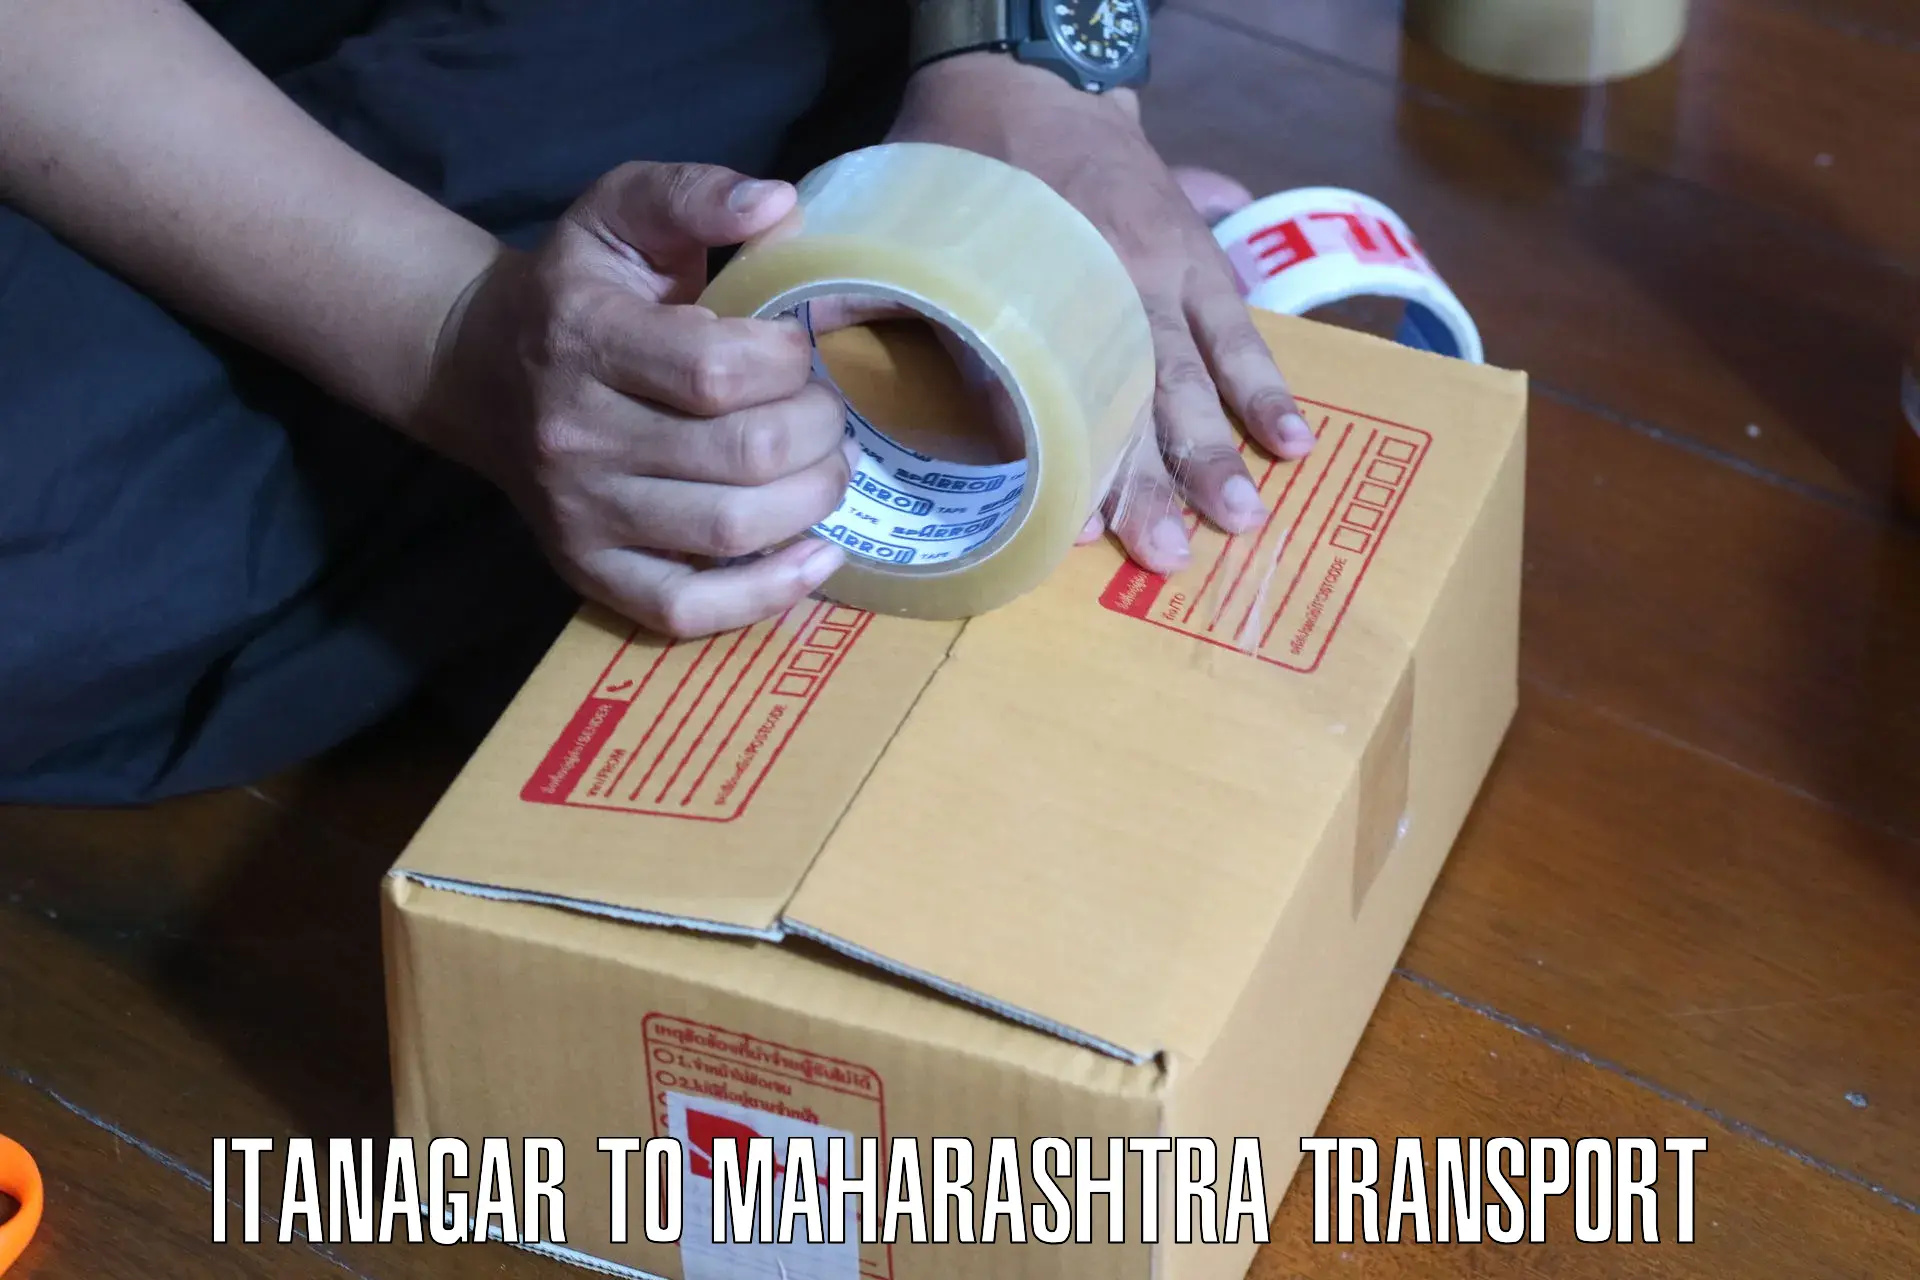 Luggage transport services Itanagar to Pandharpur